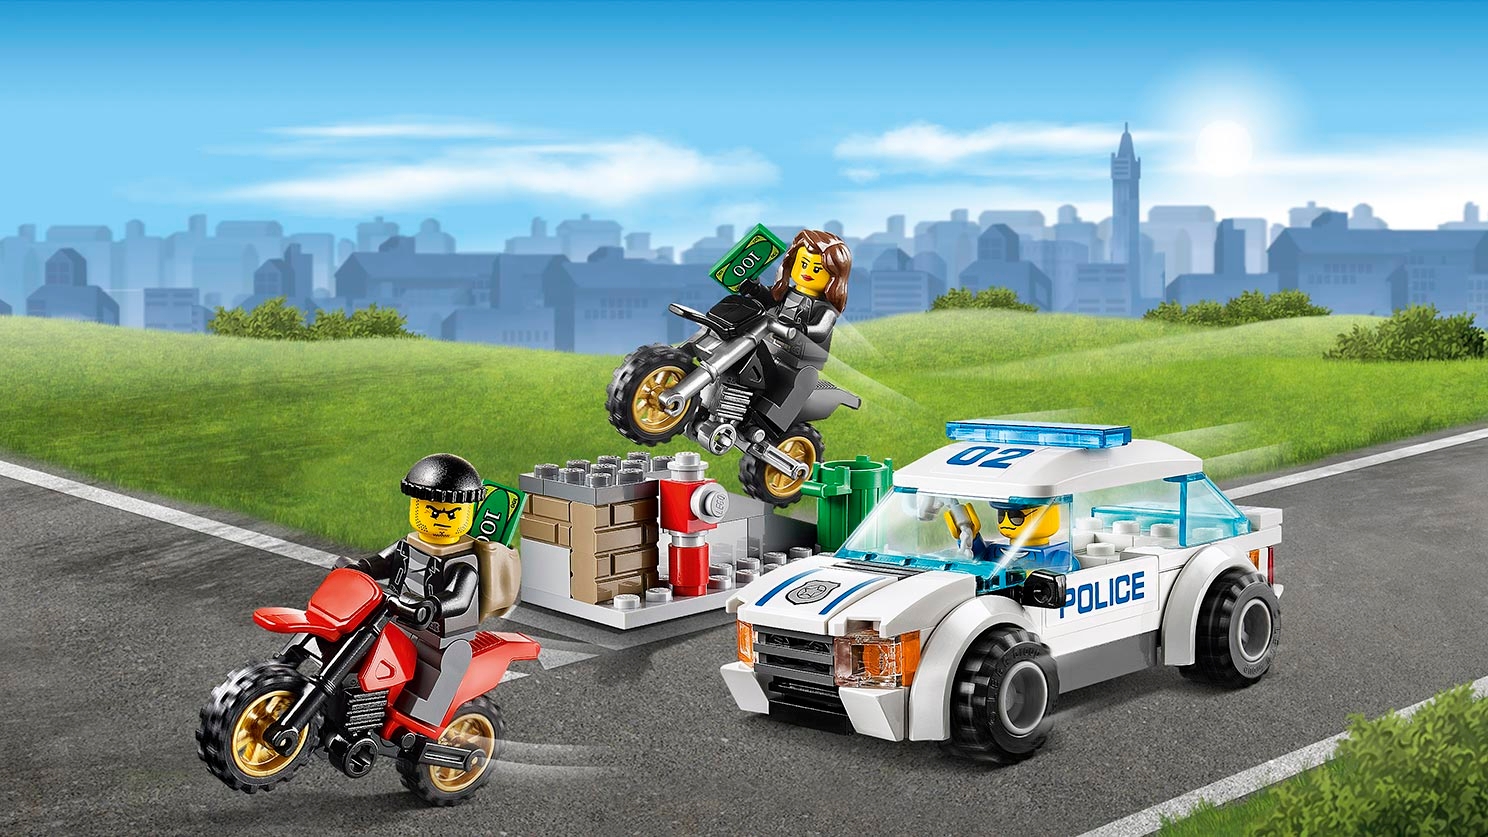 Viva Voorschrift kan niet zien Boevenjacht 60042 - LEGO® City sets - LEGO.com voor kinderen